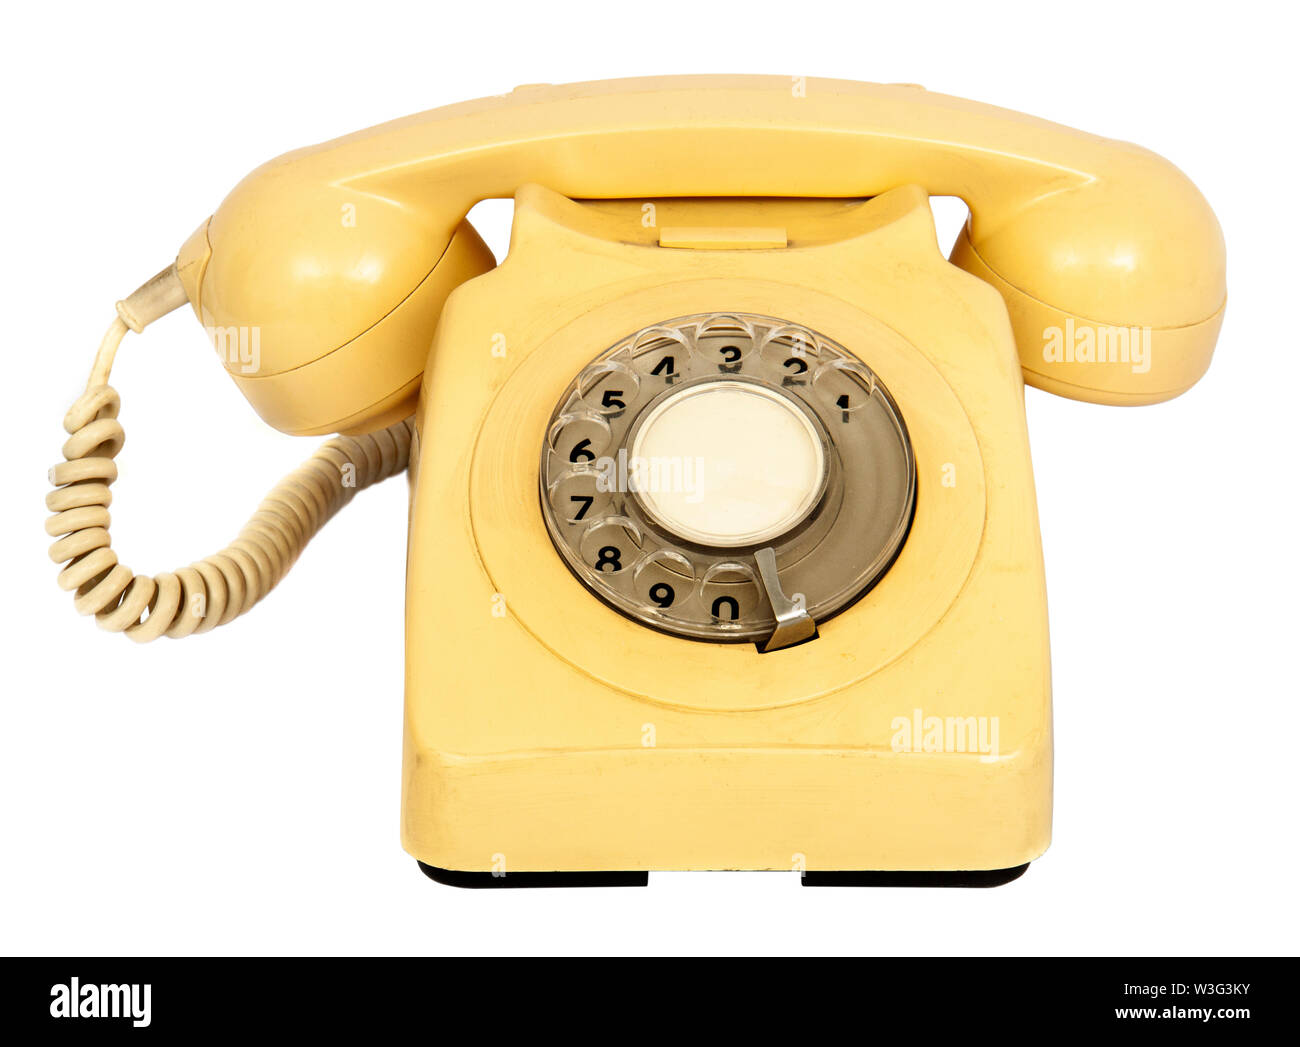 Vintage degli anni ottanta British BPO 8746g di panna banco analogico telefono con manopola Foto Stock